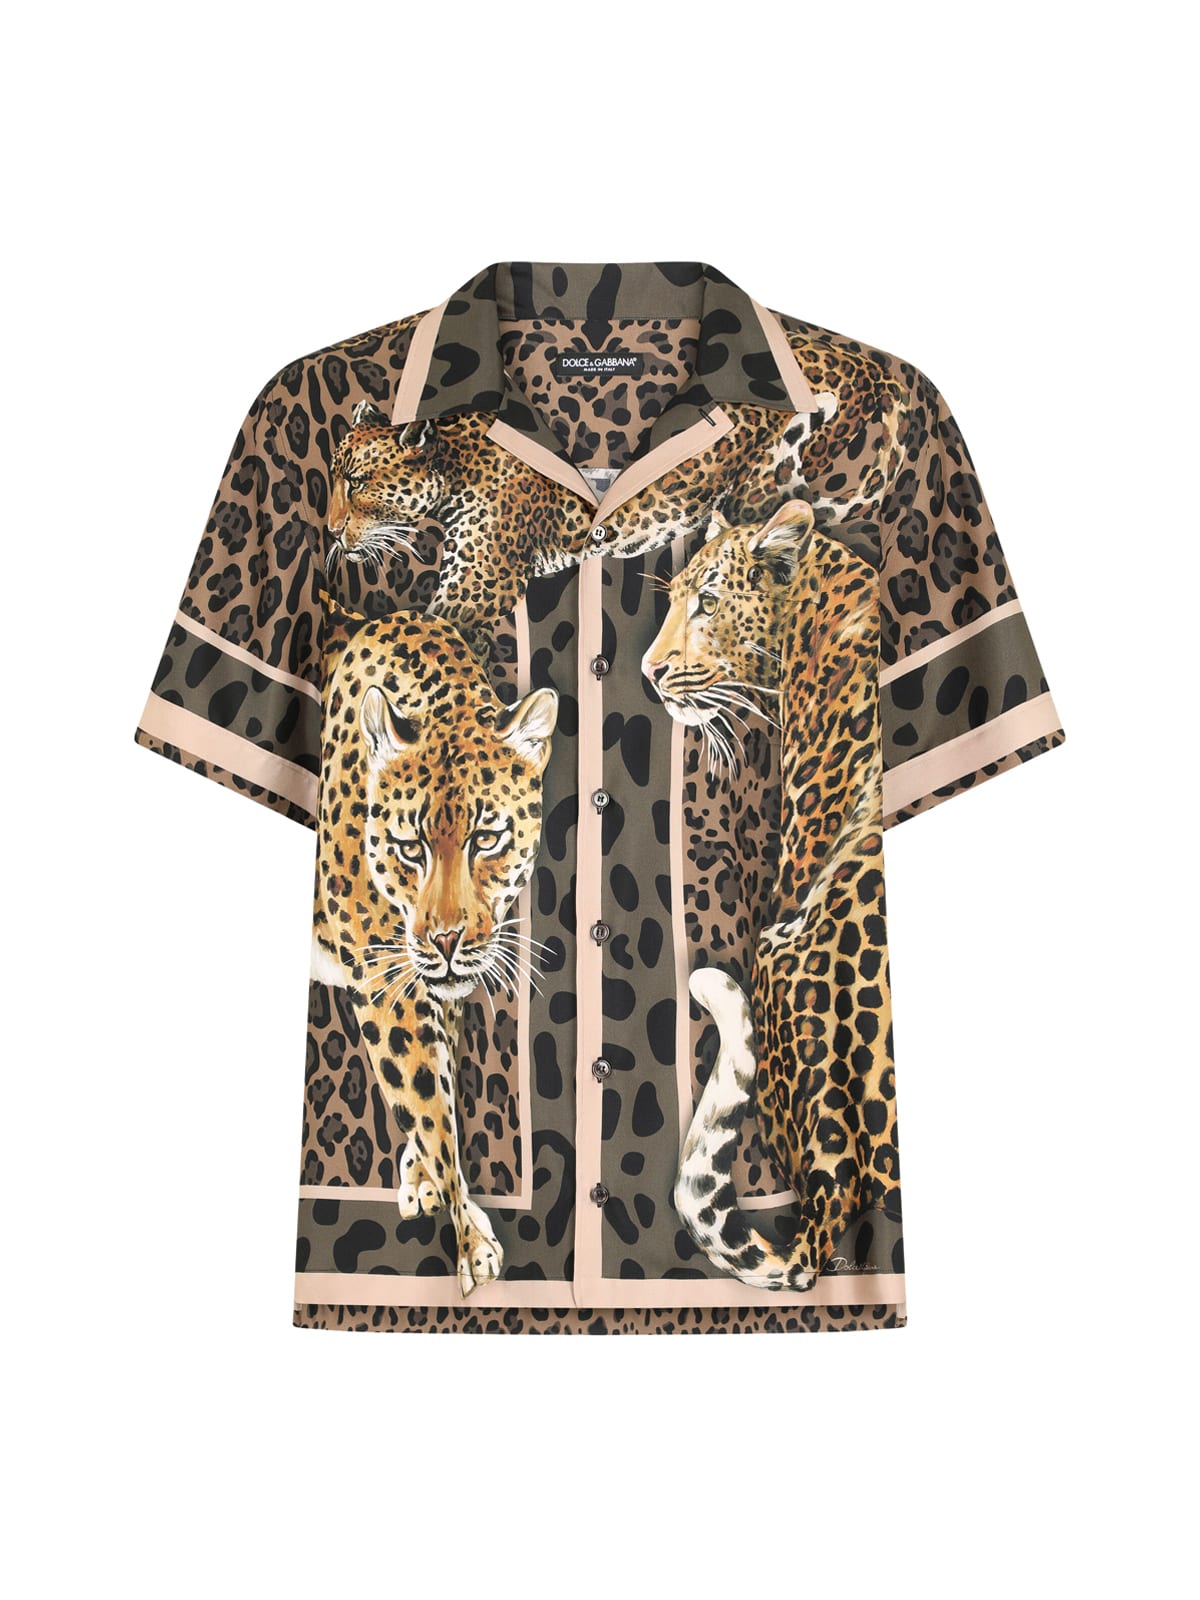 Dolce & Gabbana Leopards Print Shirt